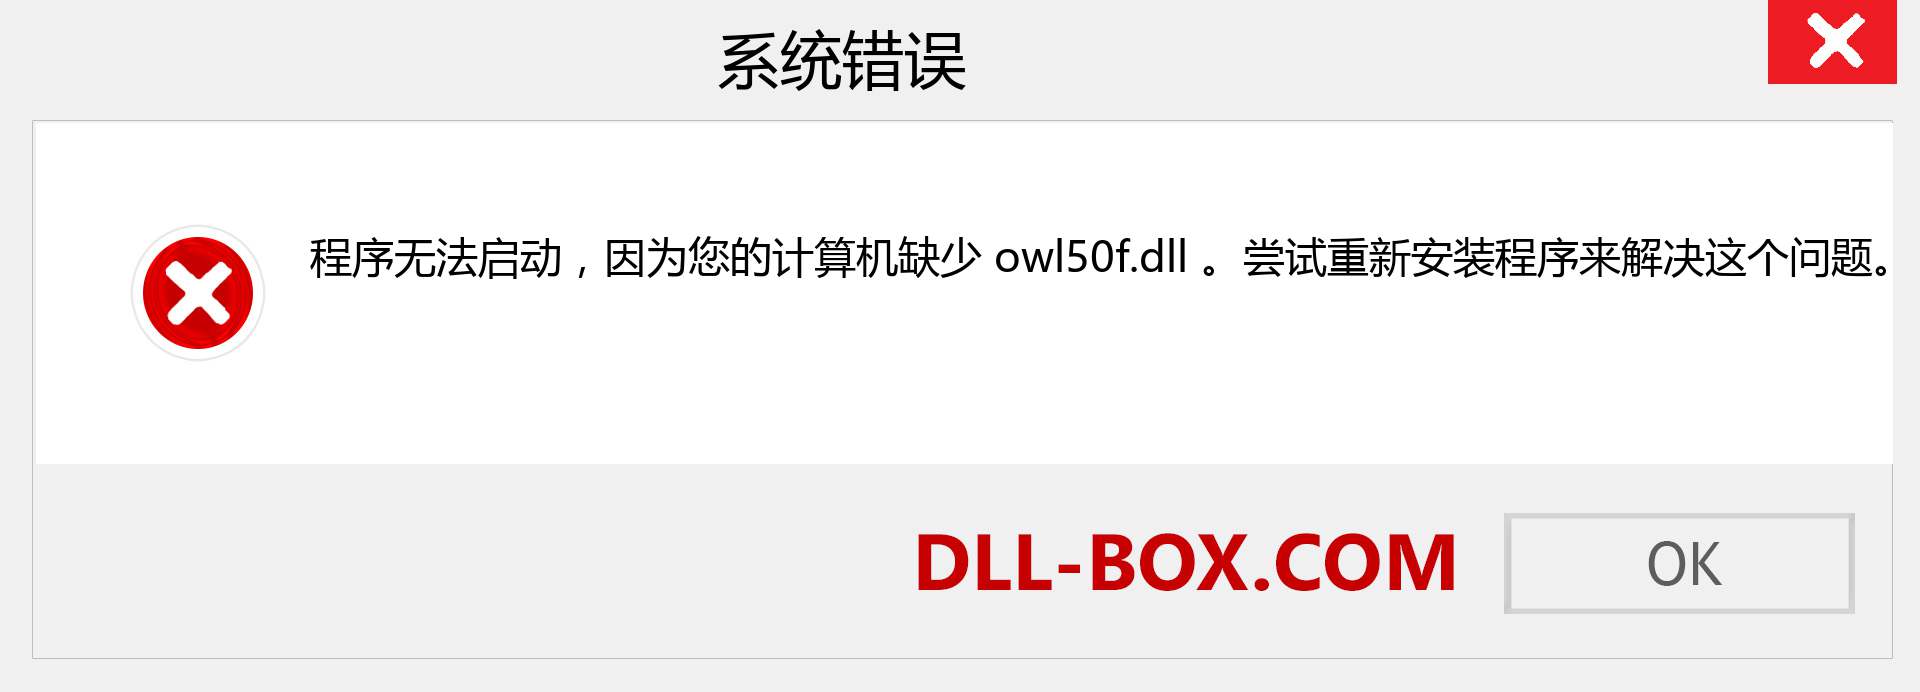 owl50f.dll 文件丢失？。 适用于 Windows 7、8、10 的下载 - 修复 Windows、照片、图像上的 owl50f dll 丢失错误